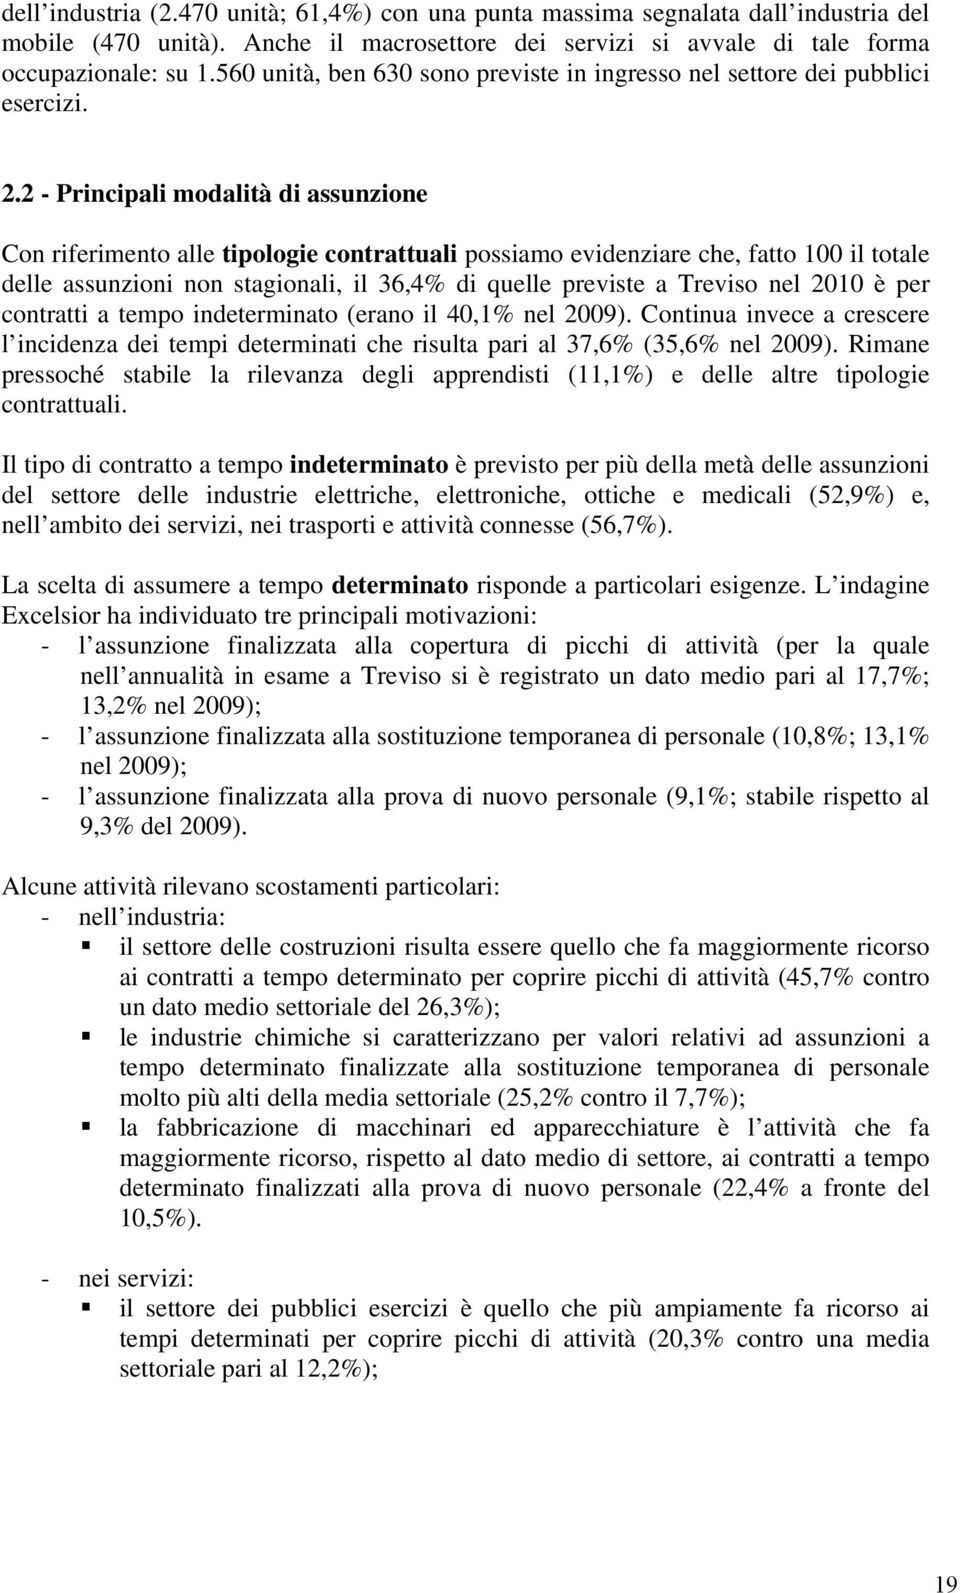 2 - Principali modalità di assunzione Con riferimento alle tipologie contrattuali possiamo evidenziare che, fatto 100 il totale delle assunzioni non stagionali, il 36,4% di quelle previste a Treviso